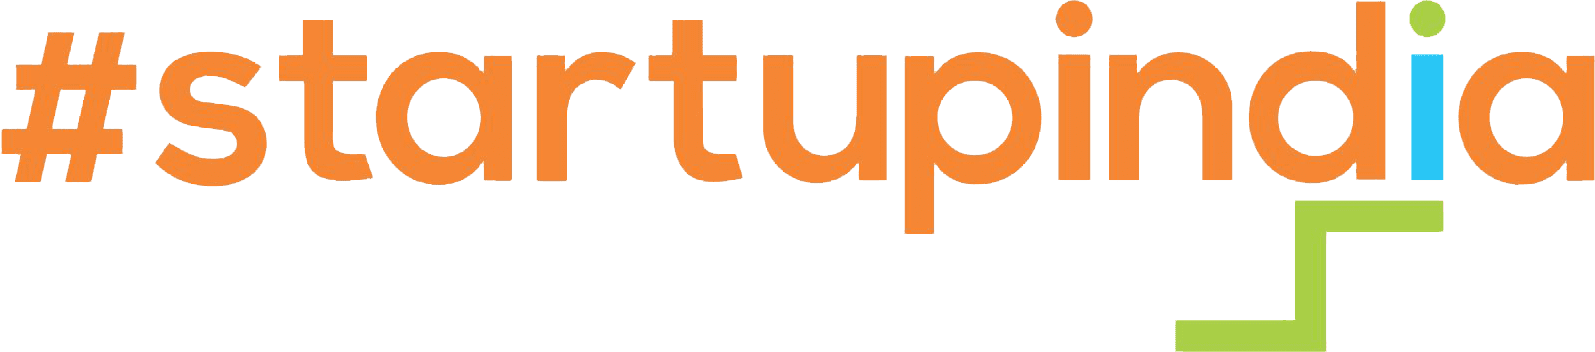 startup scheme-image